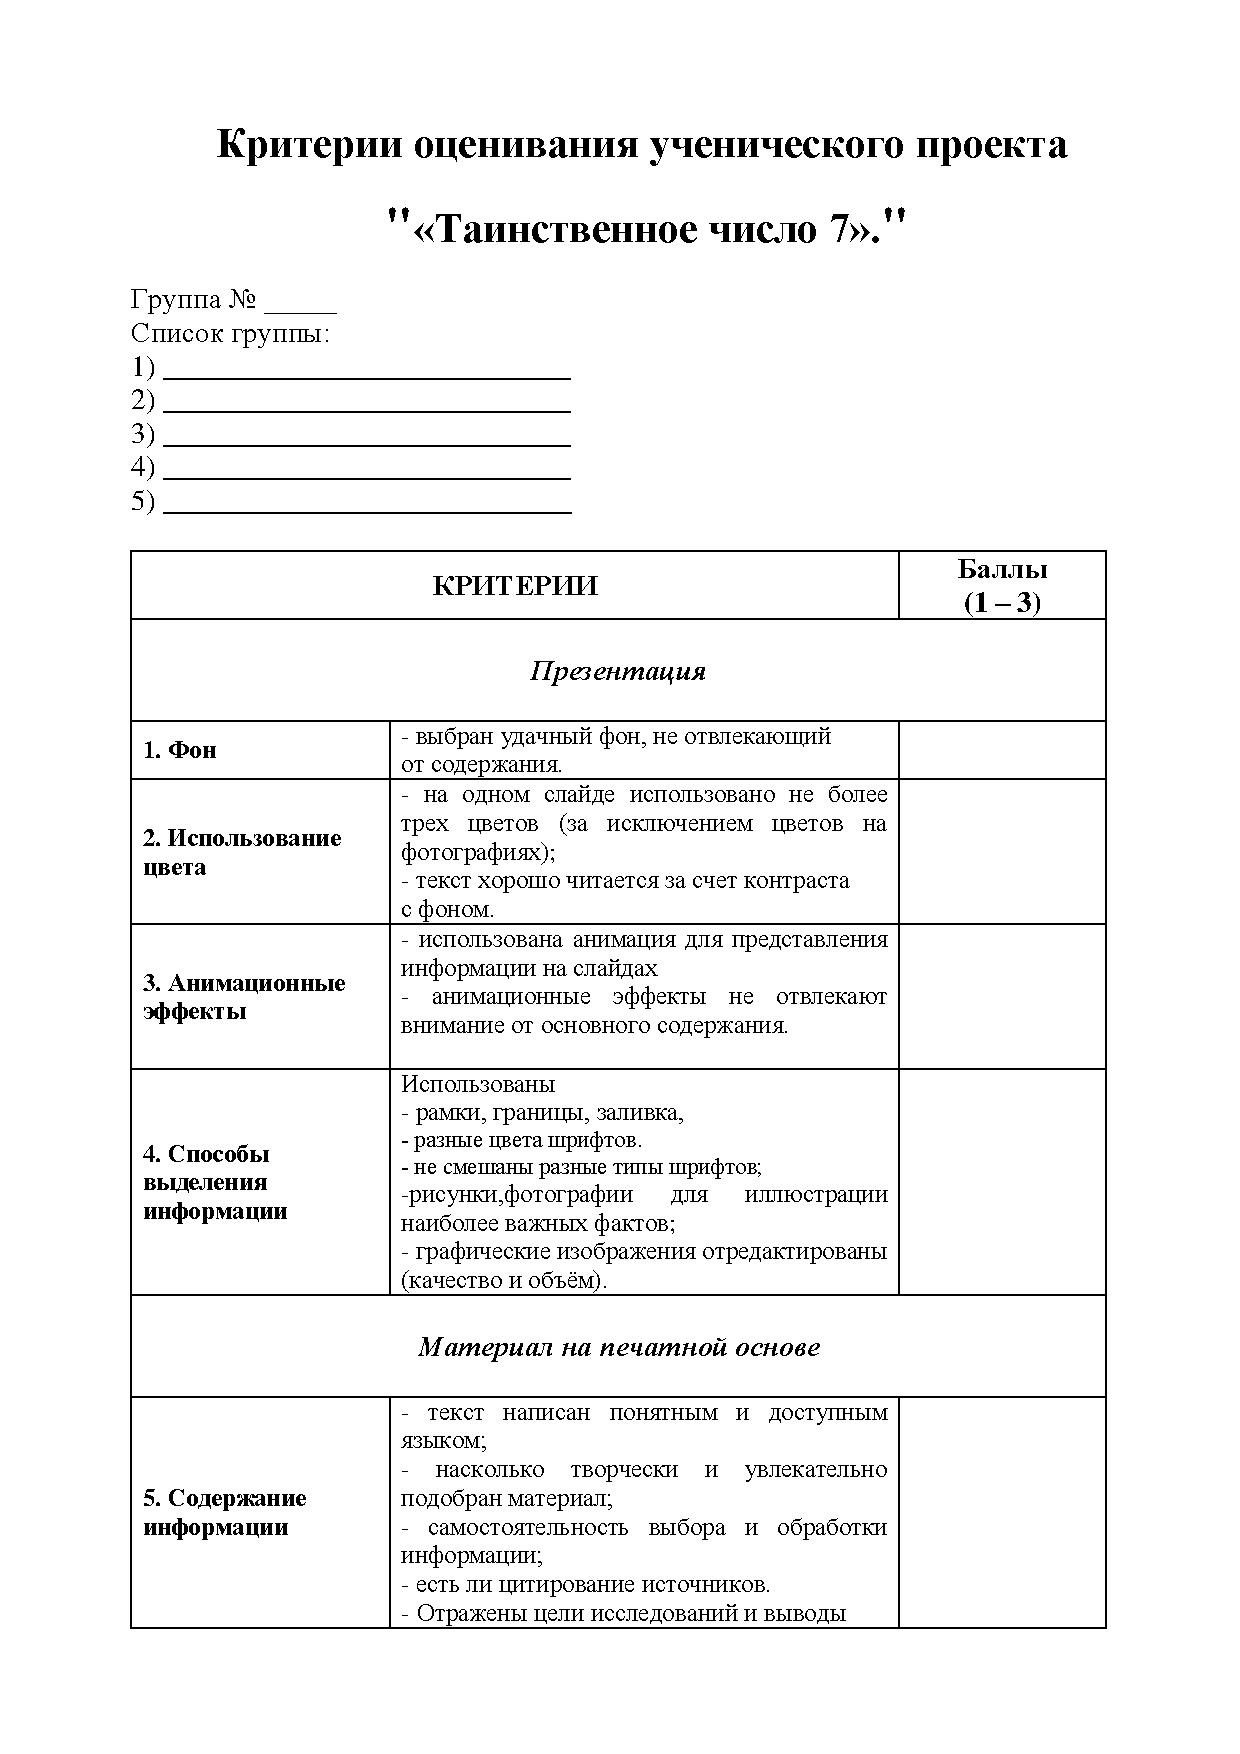 Критерии оценивания ученического проекта.pdf